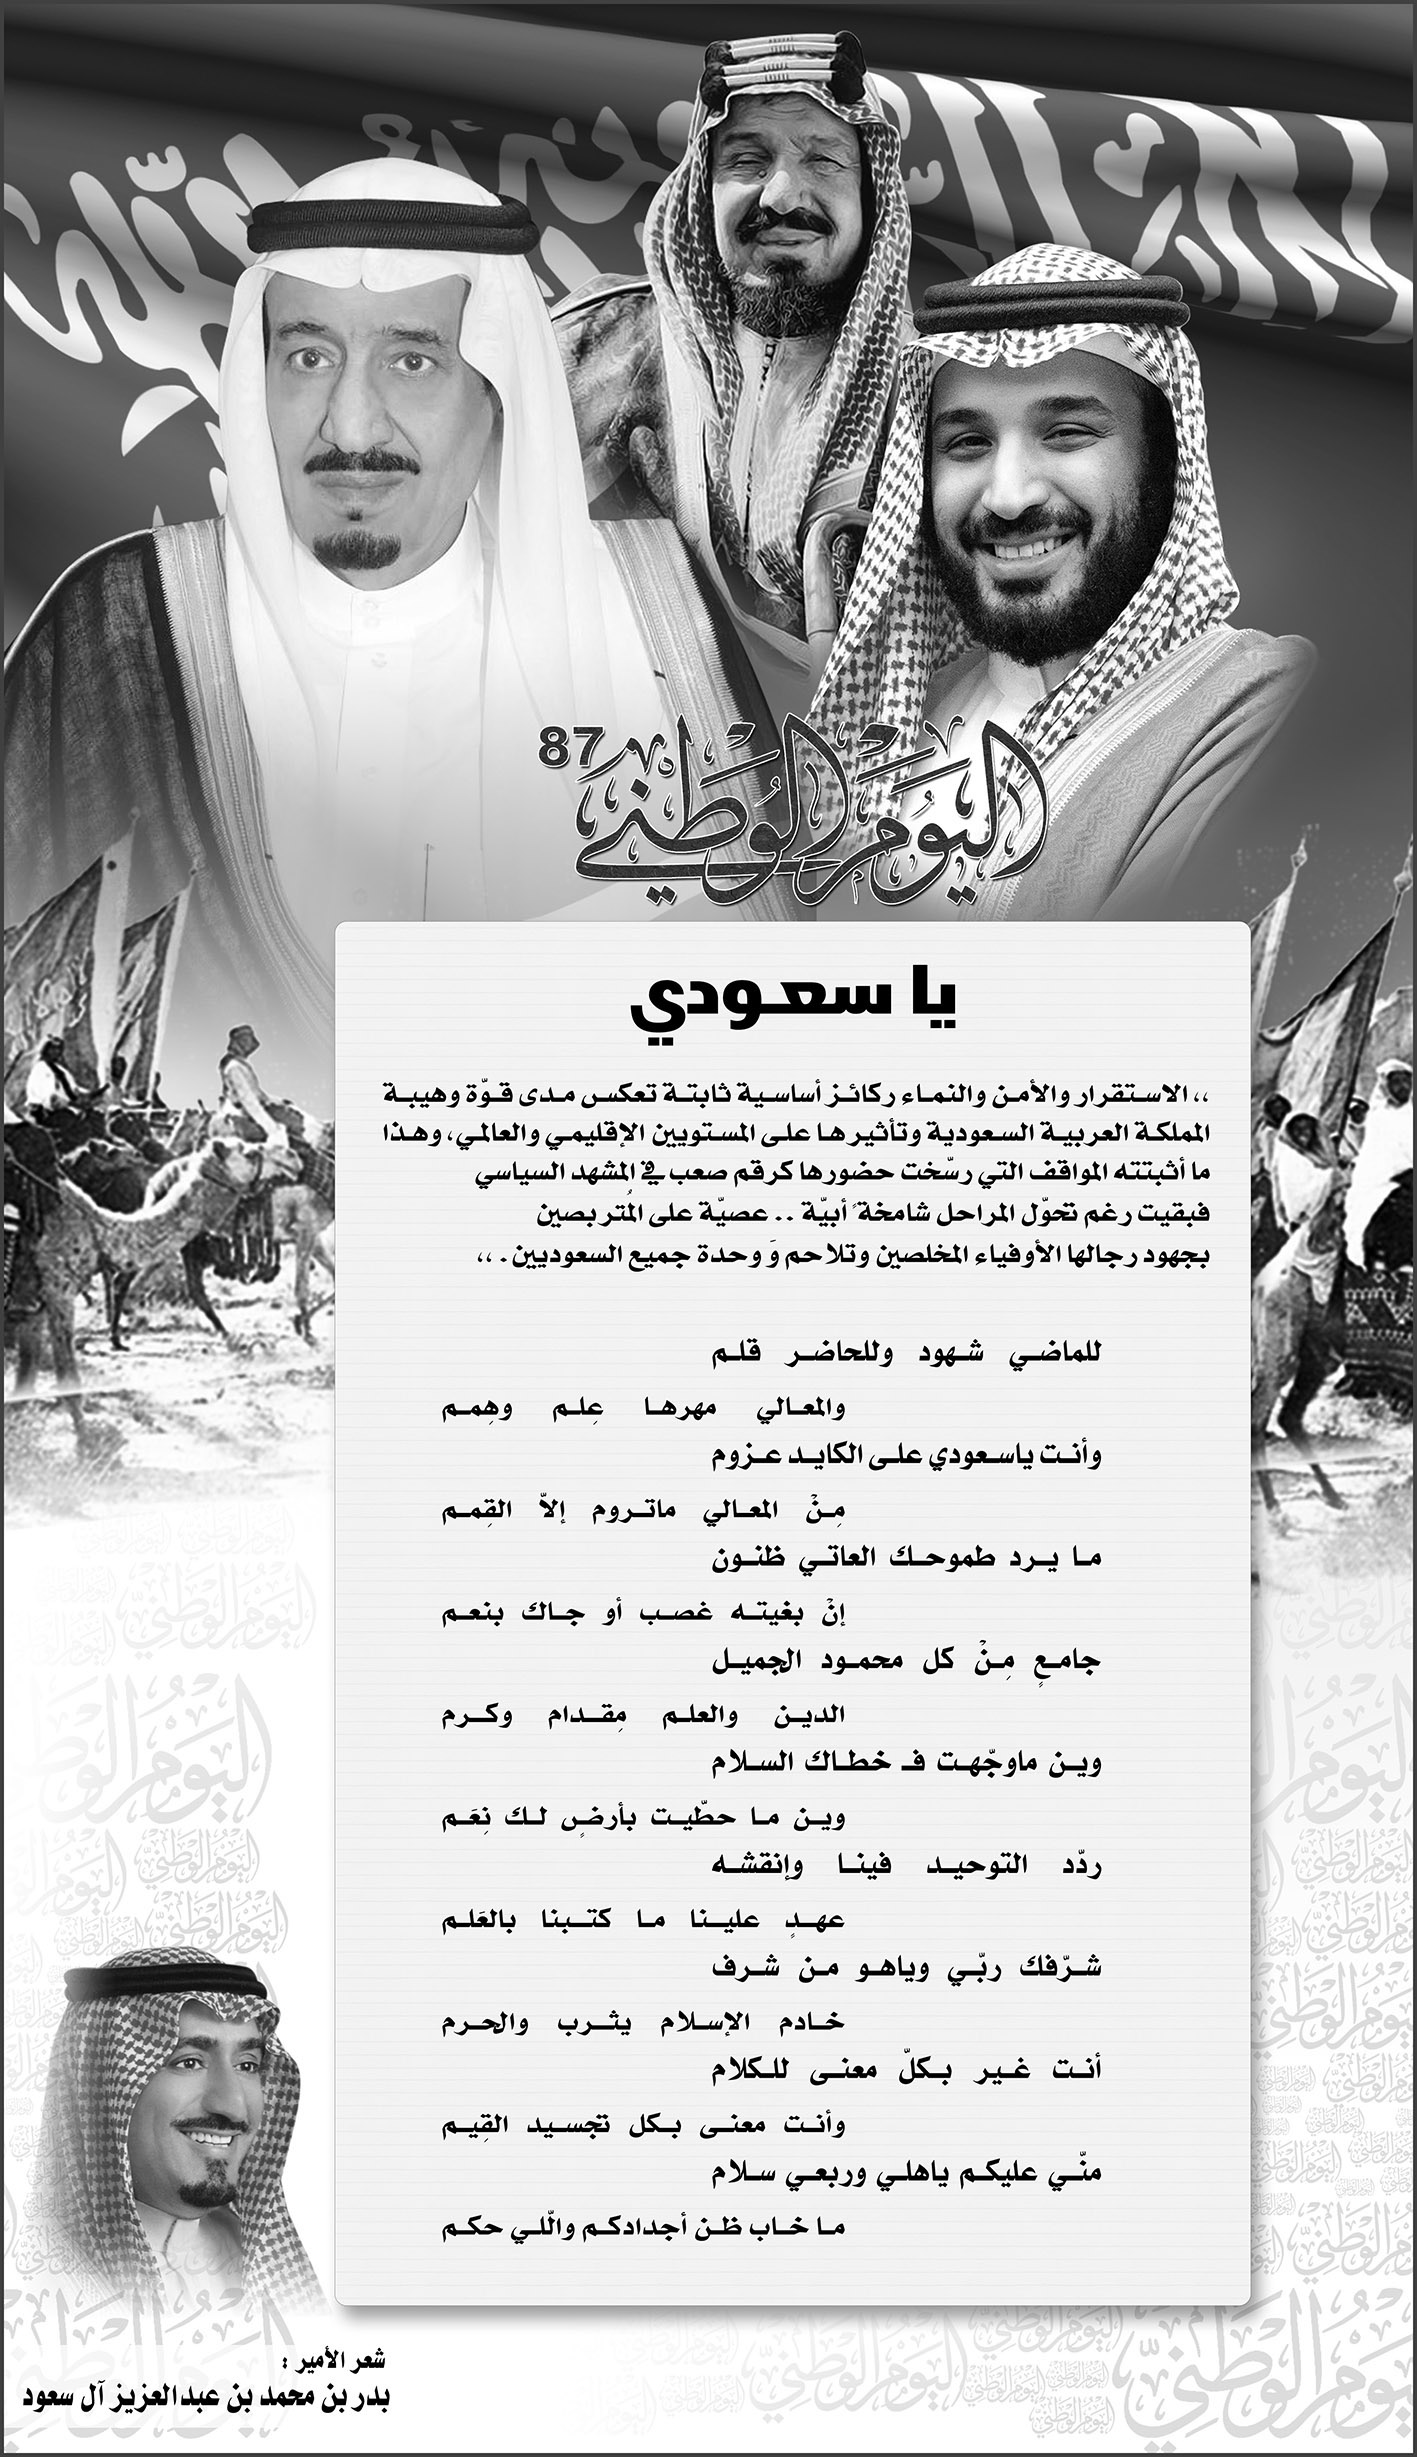 قصيدة من الامير بدر بن محمد بن عبد العزيز آل سعود بمناسبة اليوم الوطني 